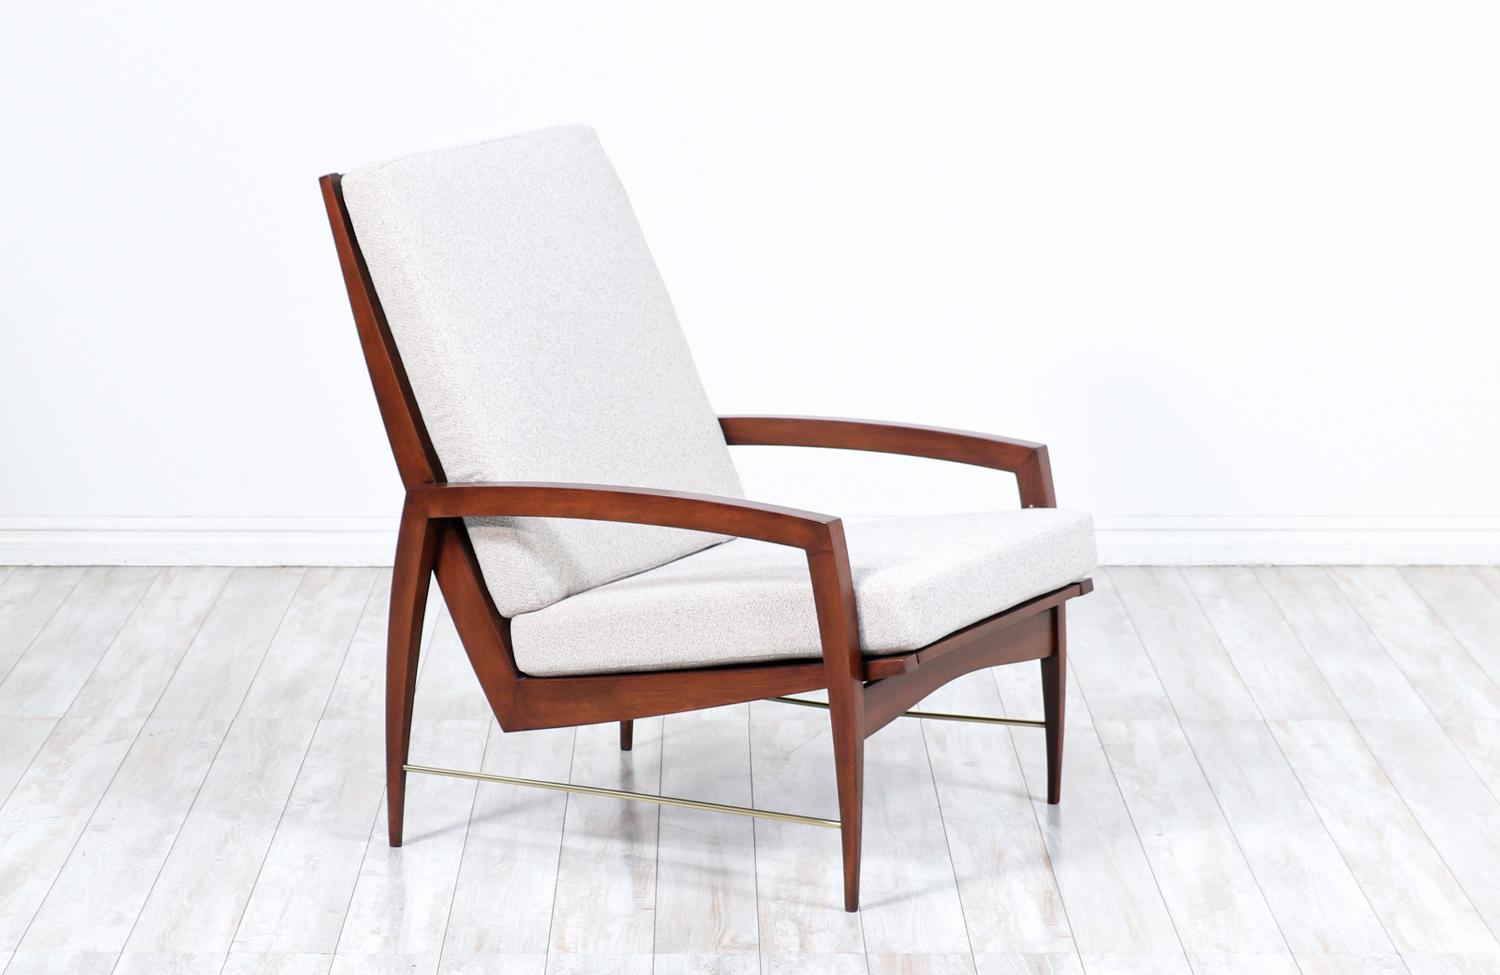 Hochlehniger Loungesessel, entworfen von Dan Johnson für Selig, hergestellt in Dänemark um 1950. Mit einem wunderschön geschnitzten Rahmen aus nussbaumfarben gebeiztem Buchenholz mit fünf Latten, die die hohe Rückenlehne betonen, und geschwungenen